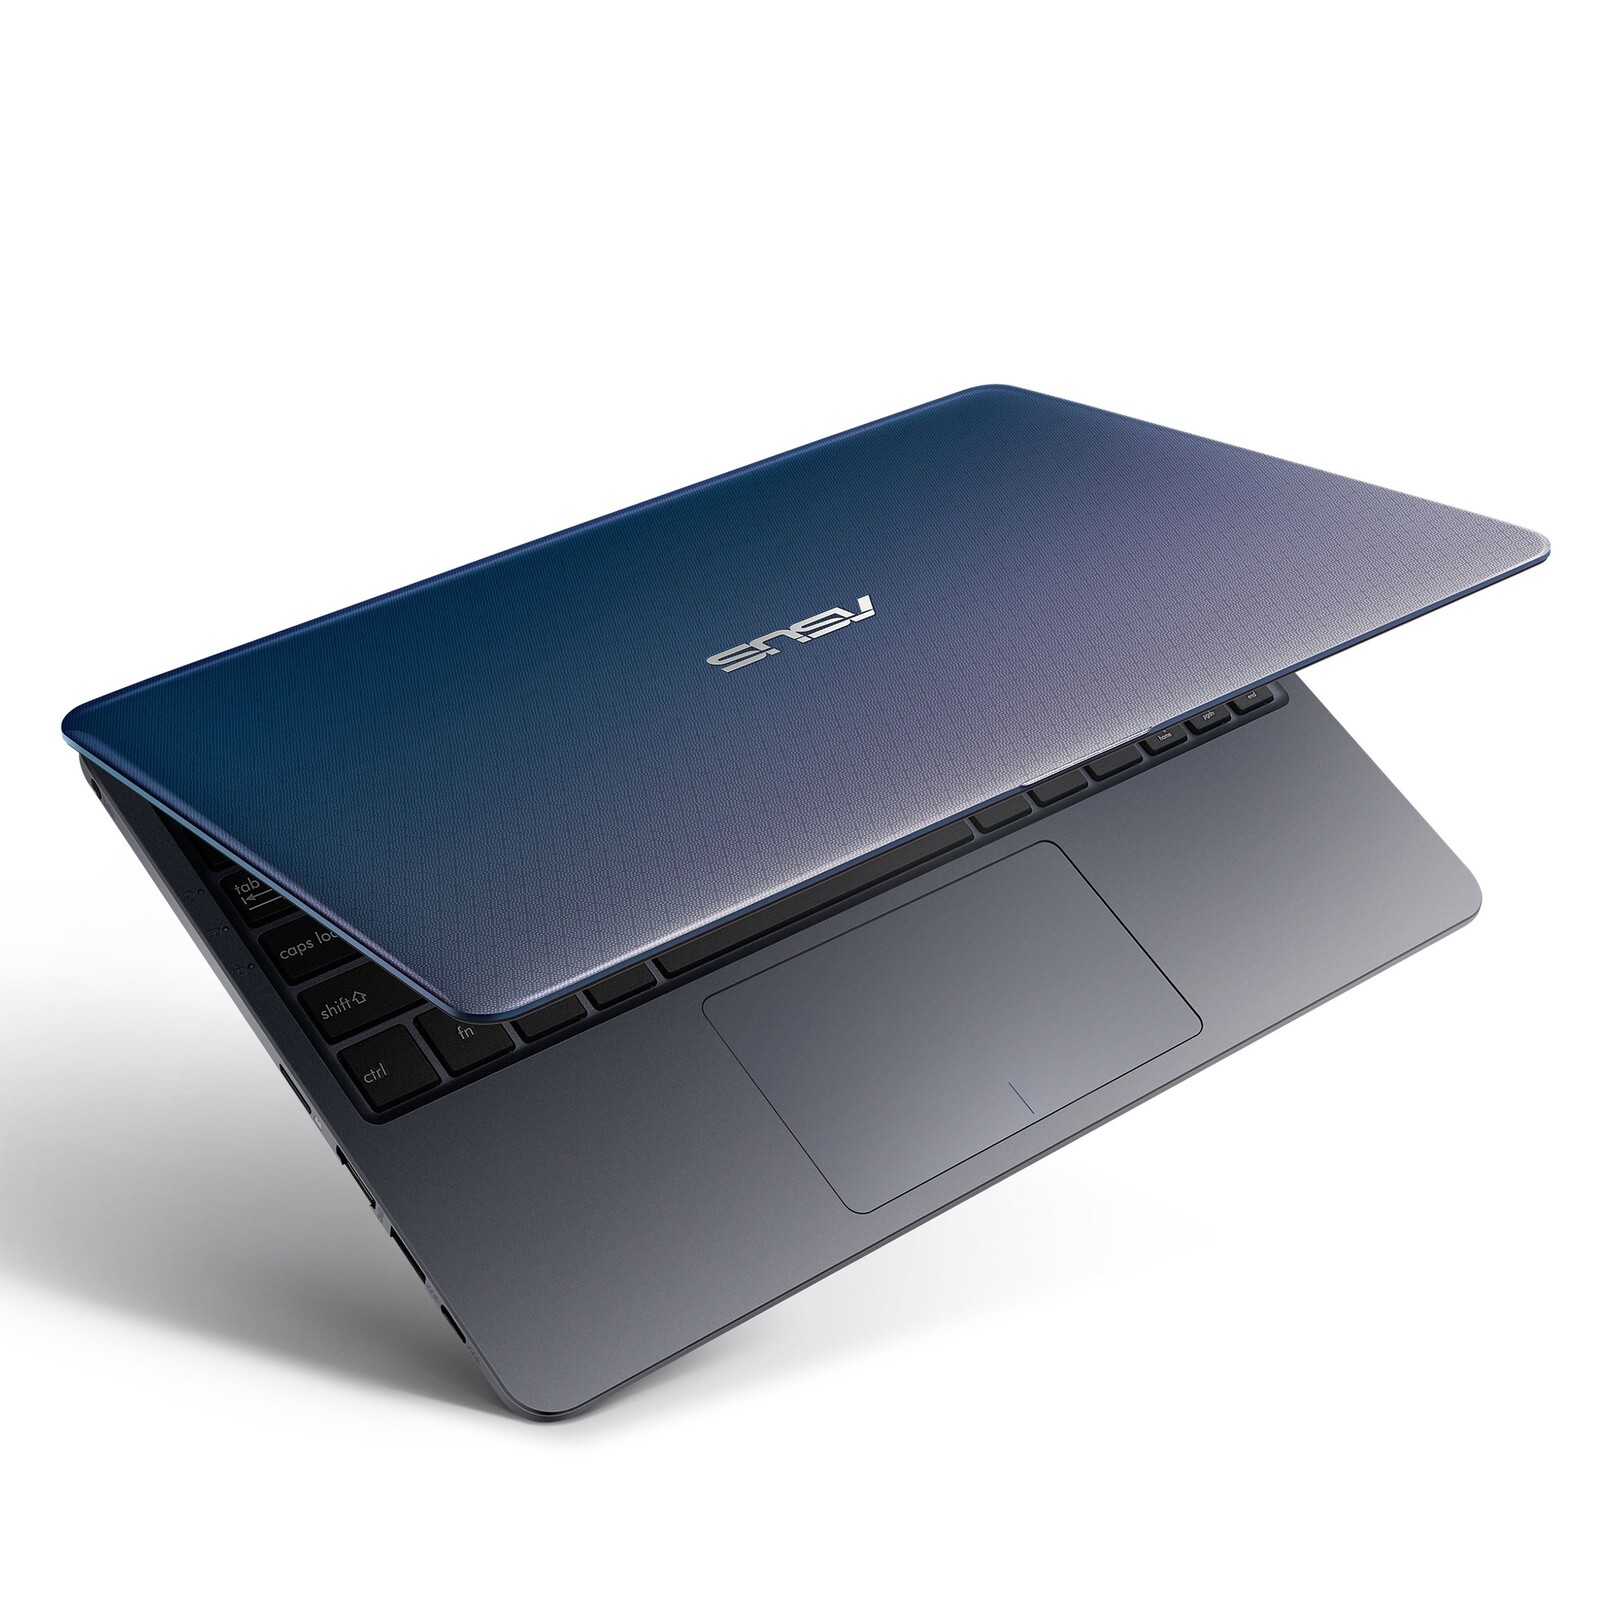 Asus VivoBook L Series - Notebookcheck.net External Reviews